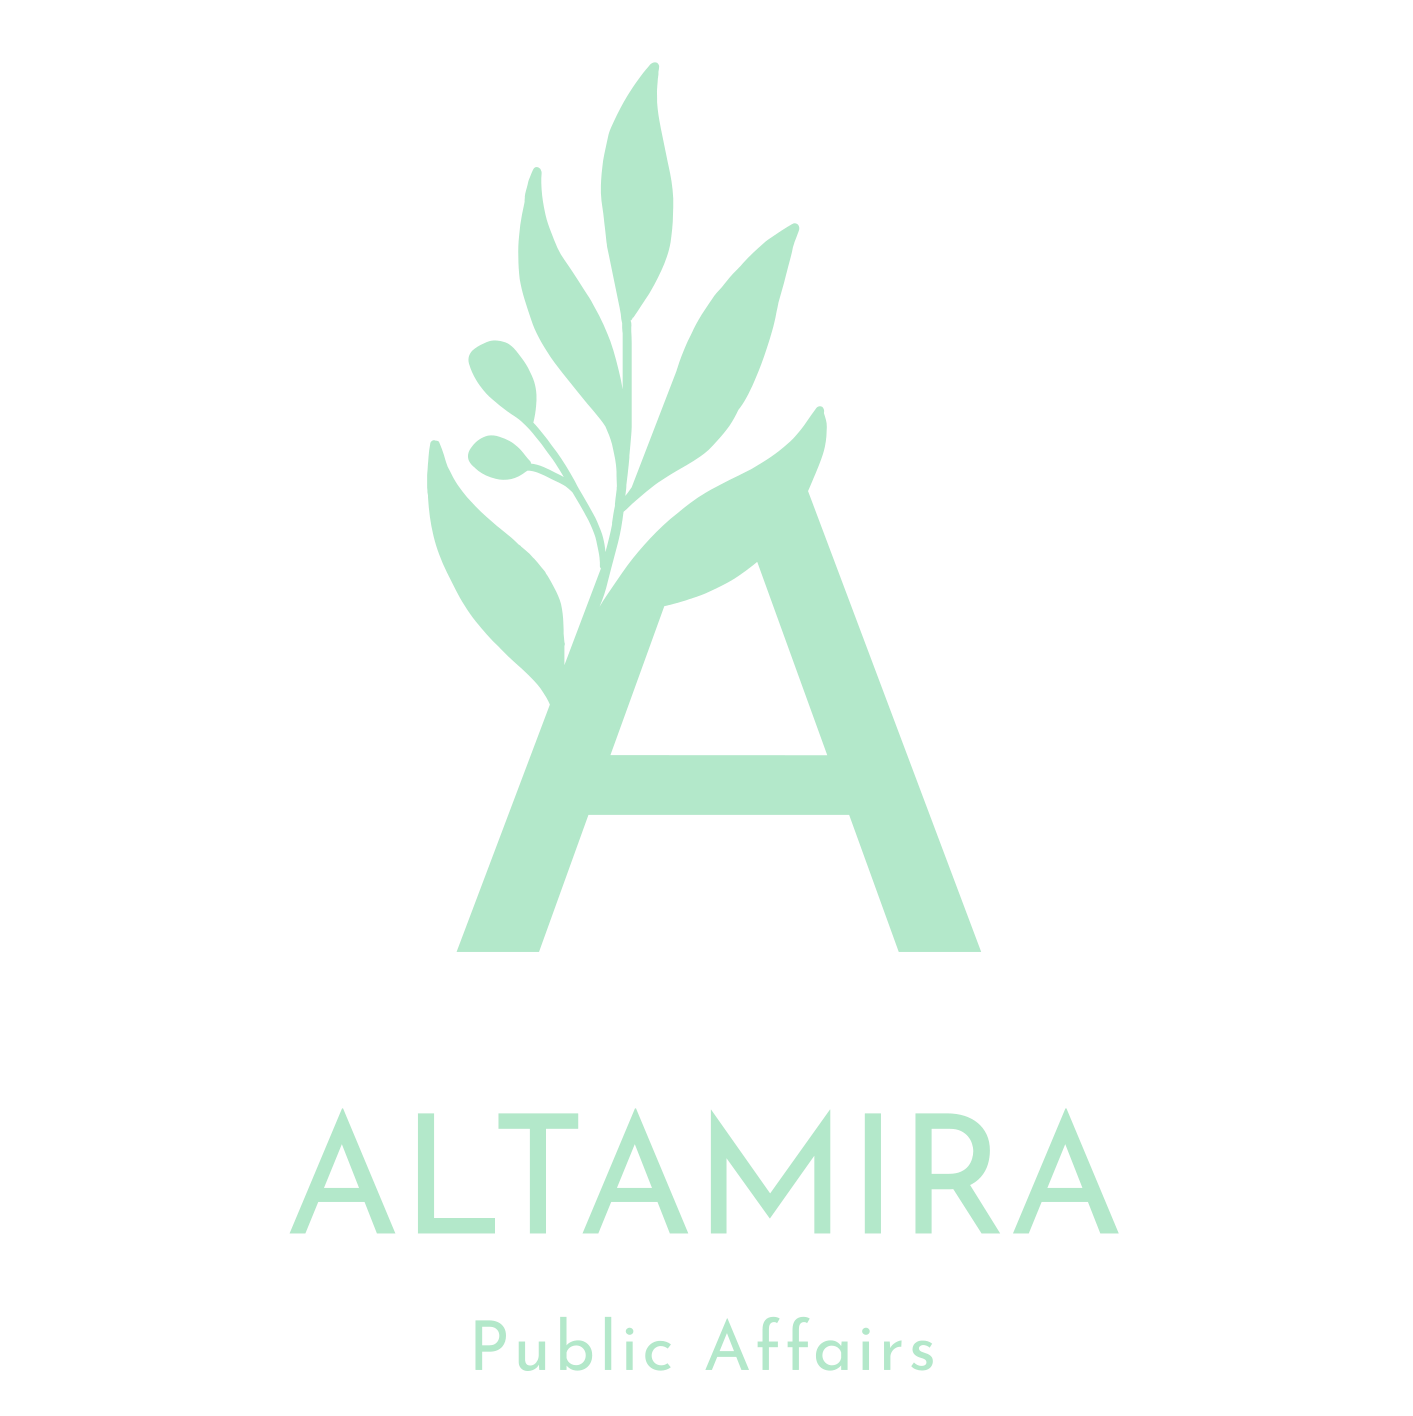 ALTAMIRA PUBLICS